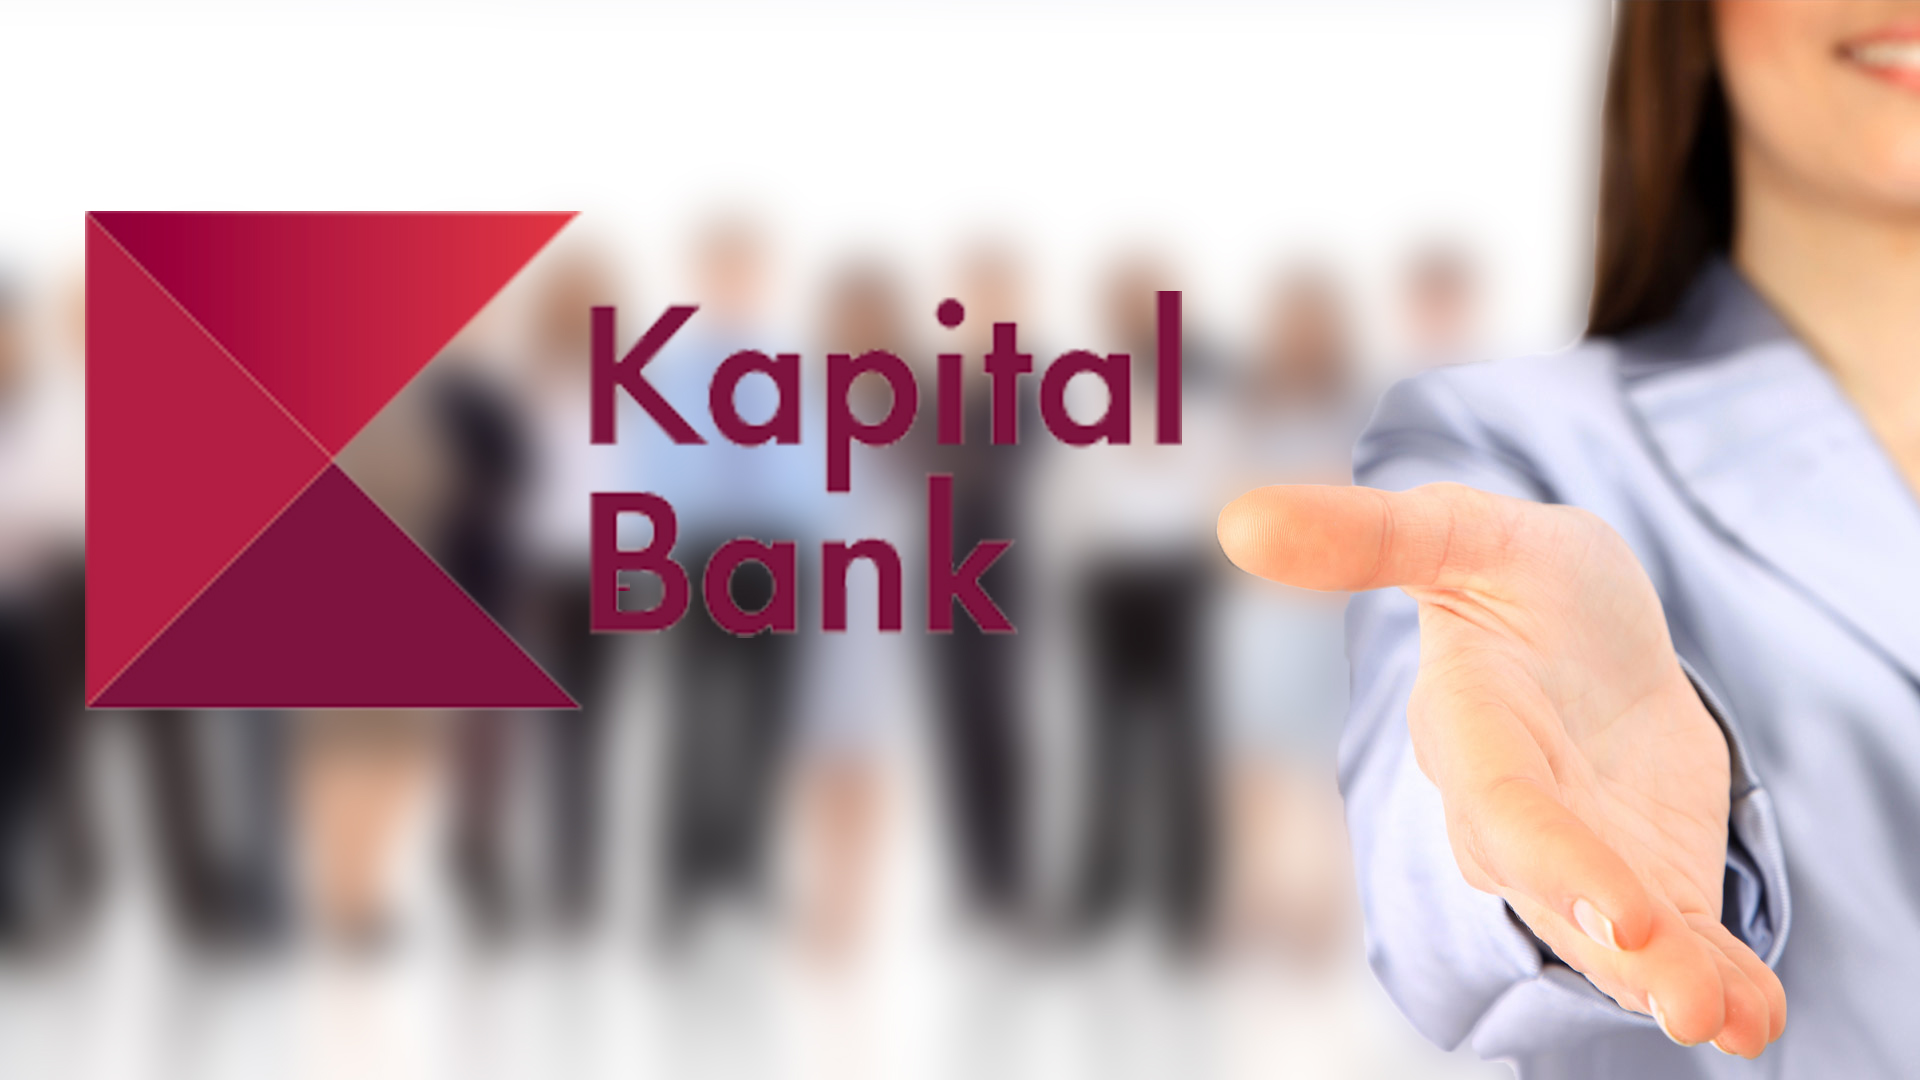 Kapital Bank-da İŞ VAR! - 15 Yeni Vakansiya